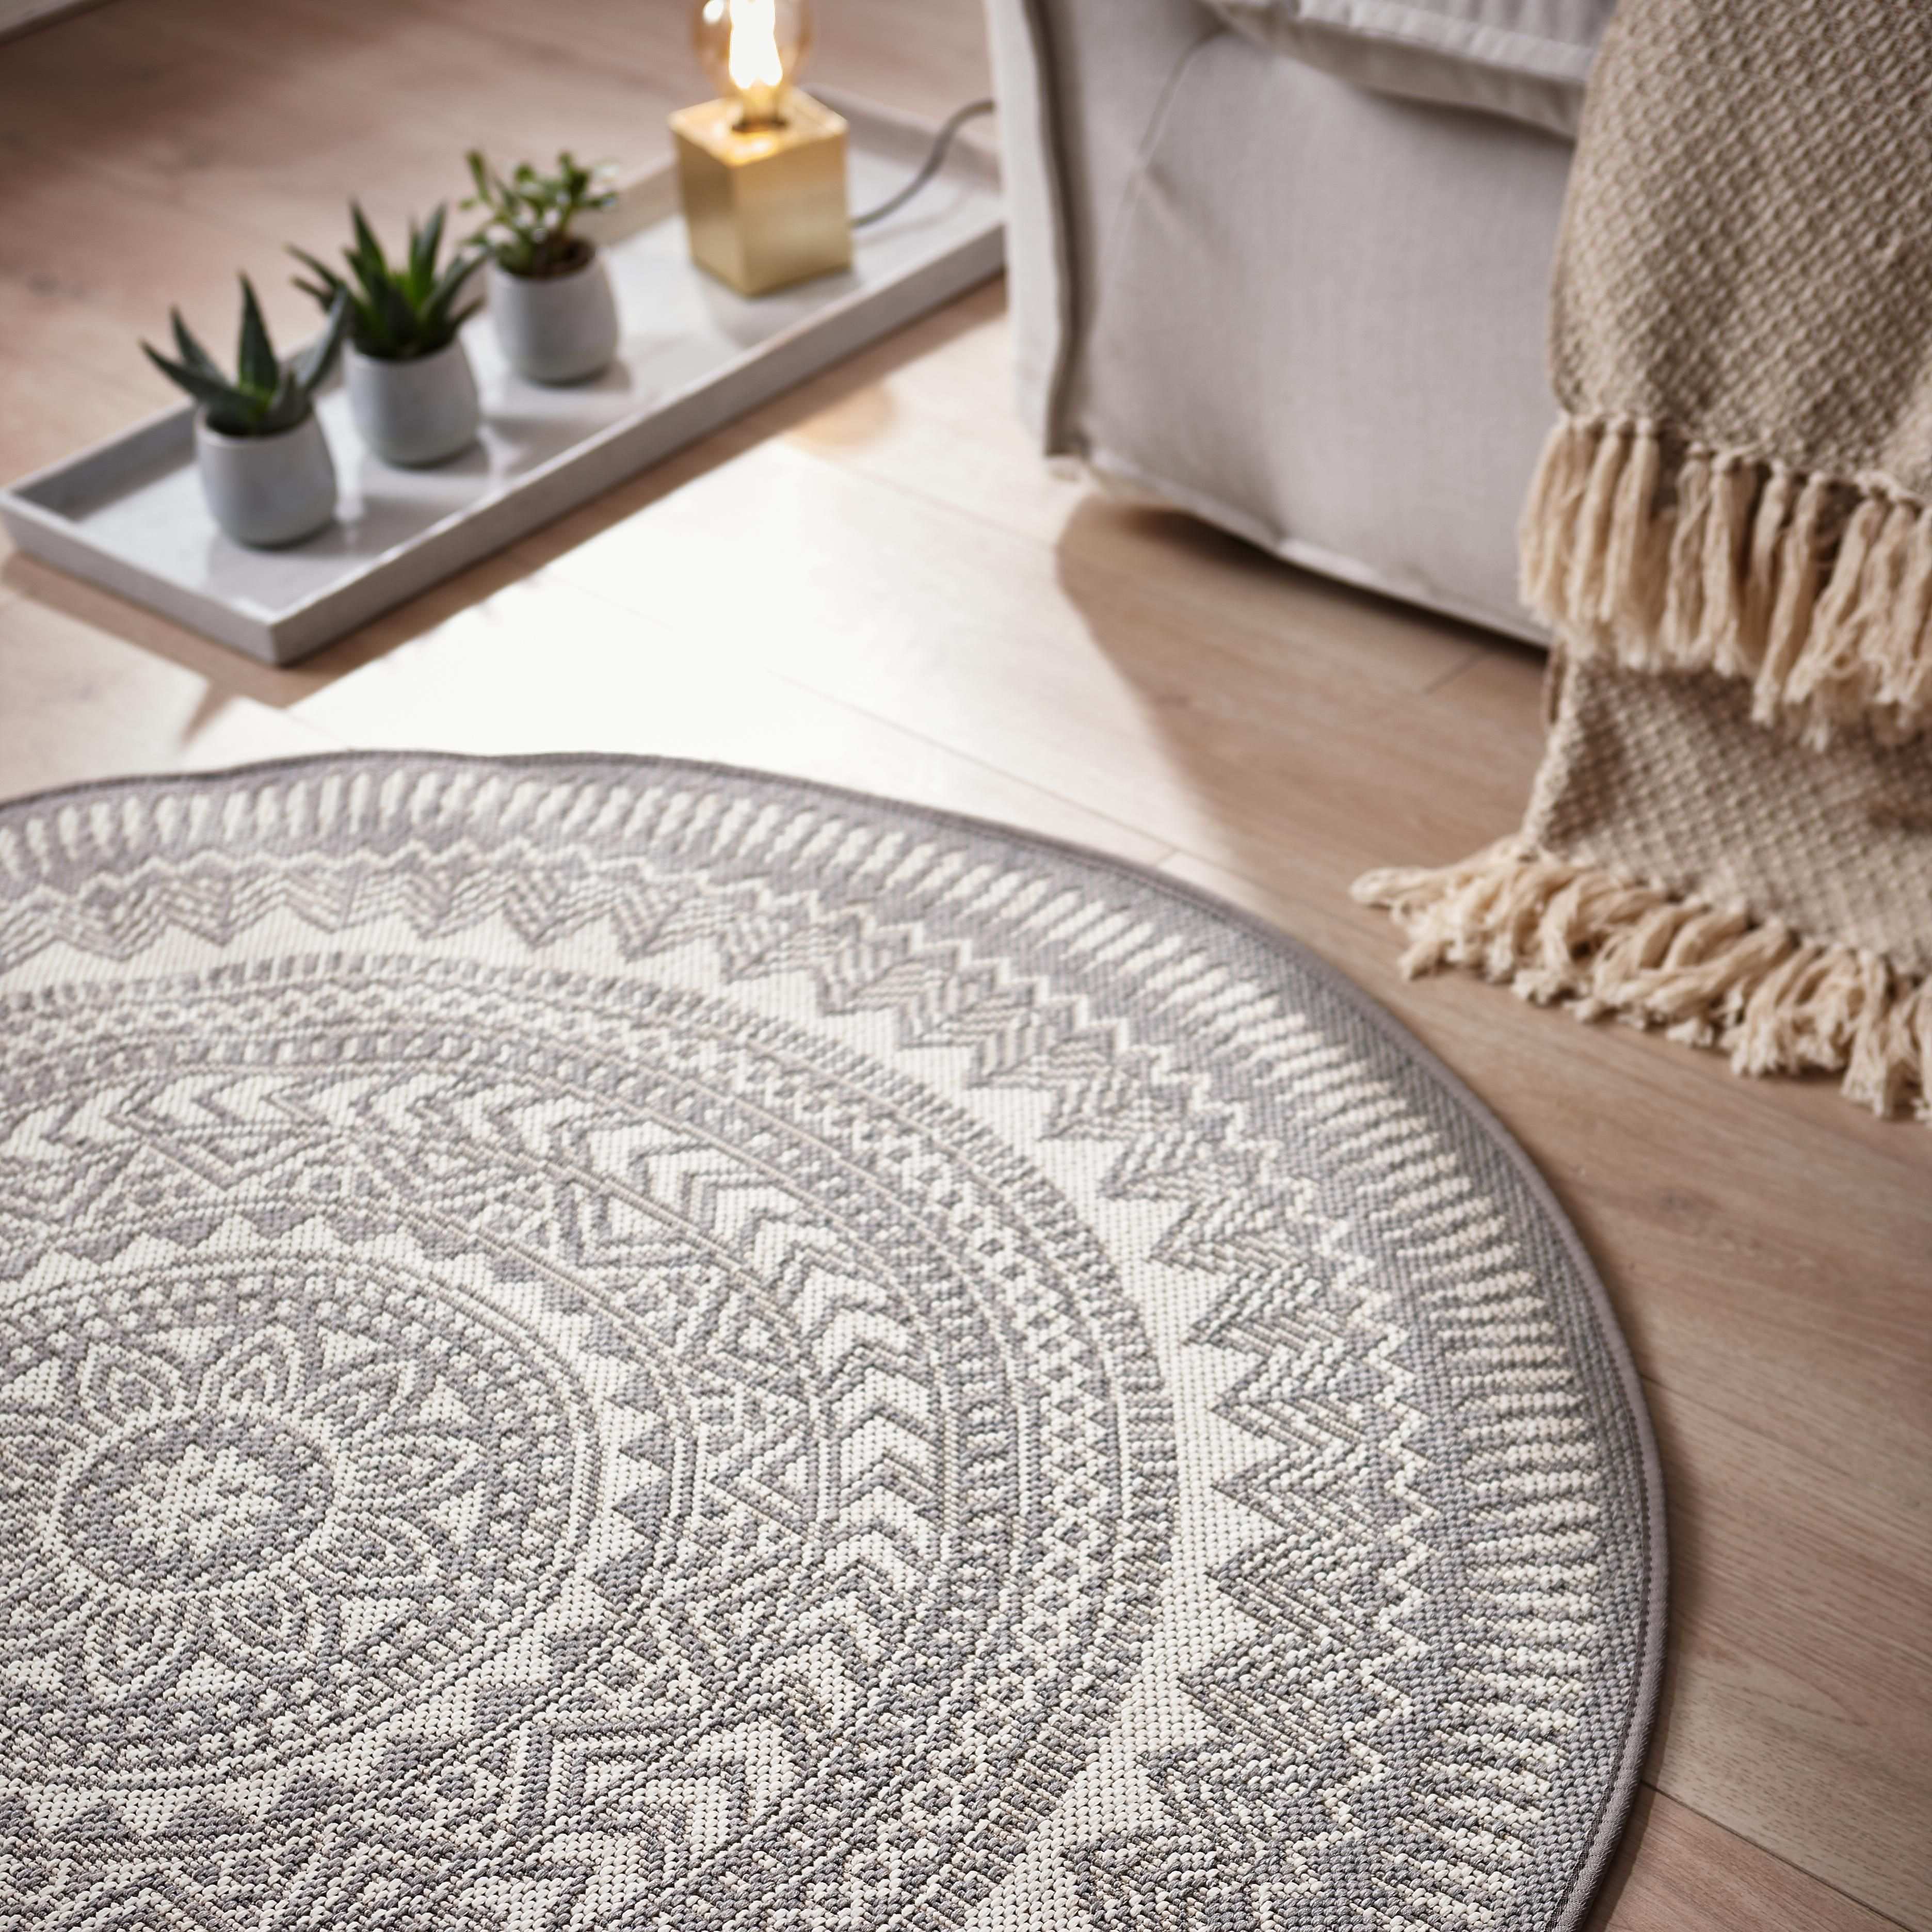 Dieser Runde Teppich Schafft Eine Wohnliche Atmosphare In Eurer Wohnung Und Passt Zu Vielen Mobelstucken Teppich Grau Rund Teppich Teppich Grau